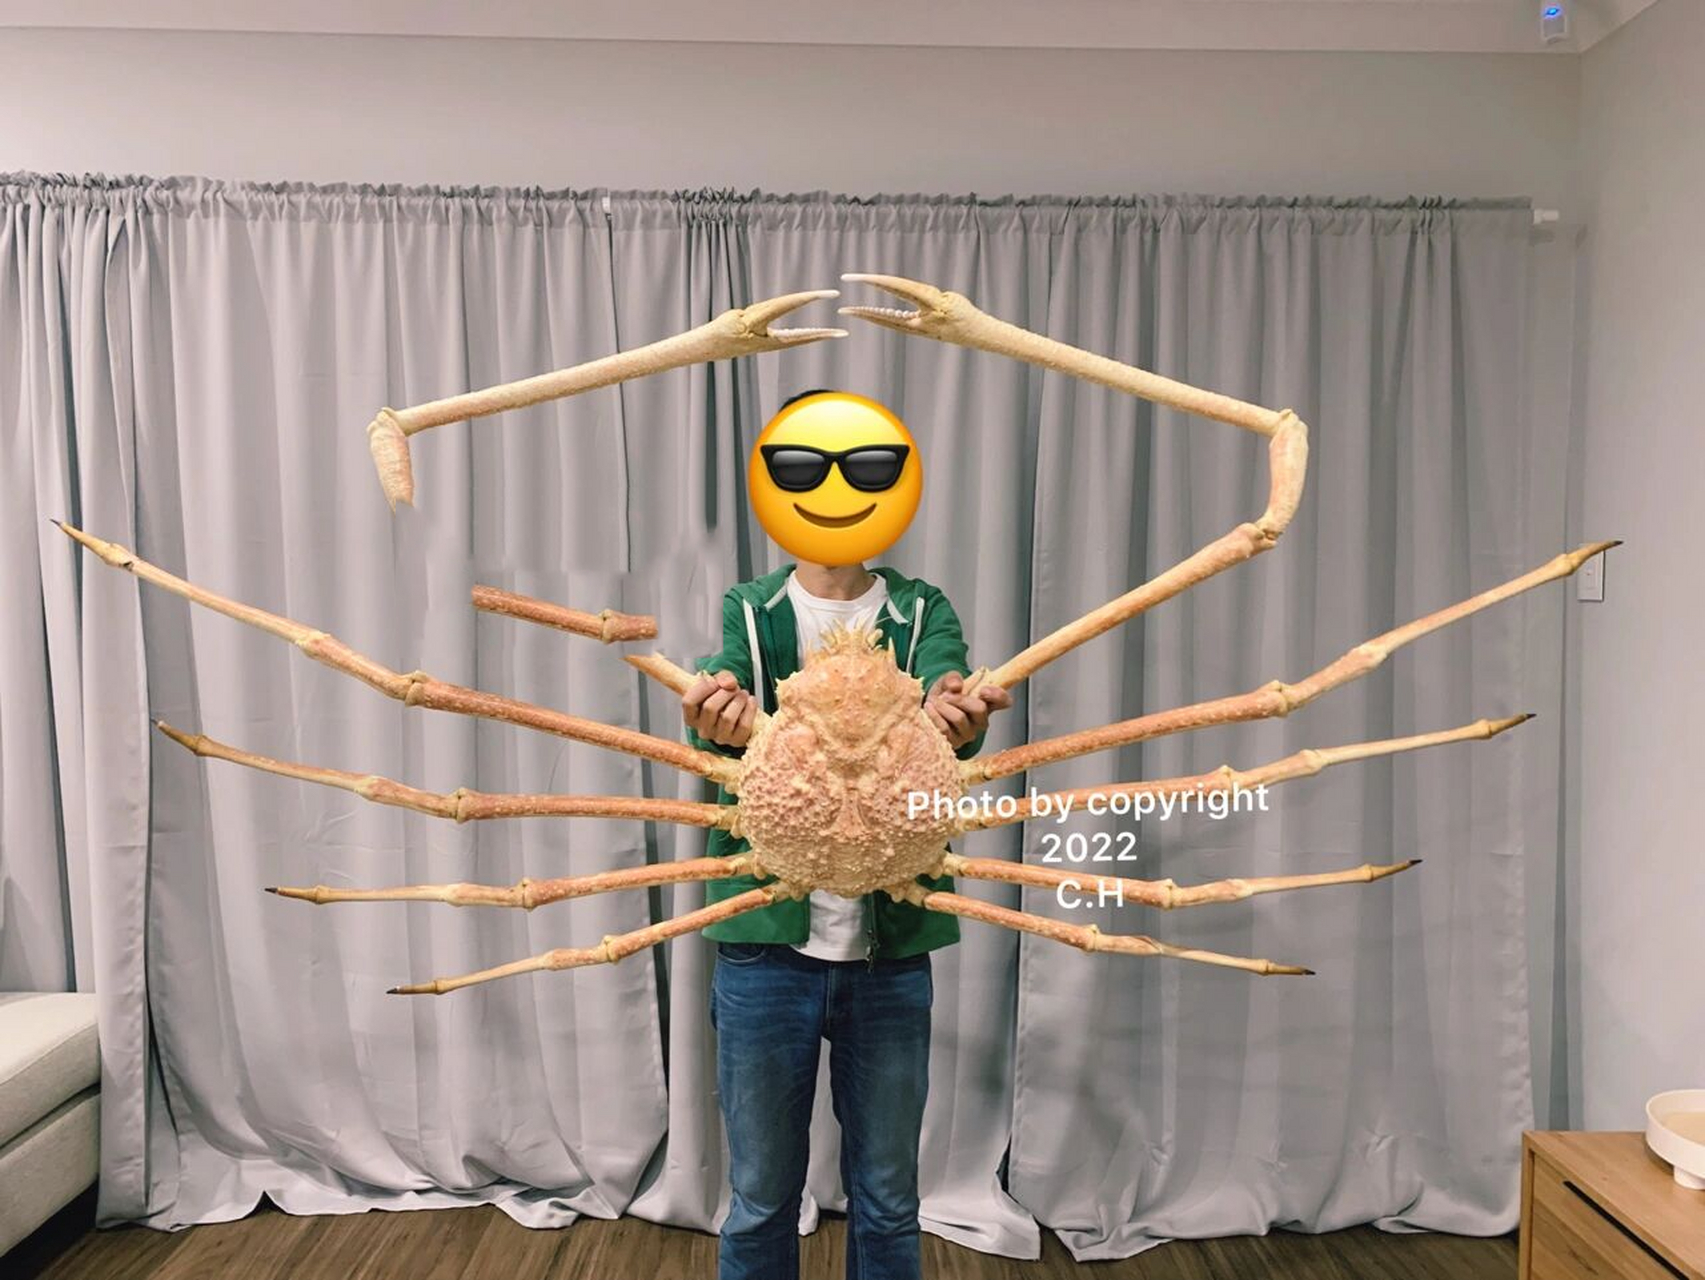 巨型日本蜘蛛蟹图片